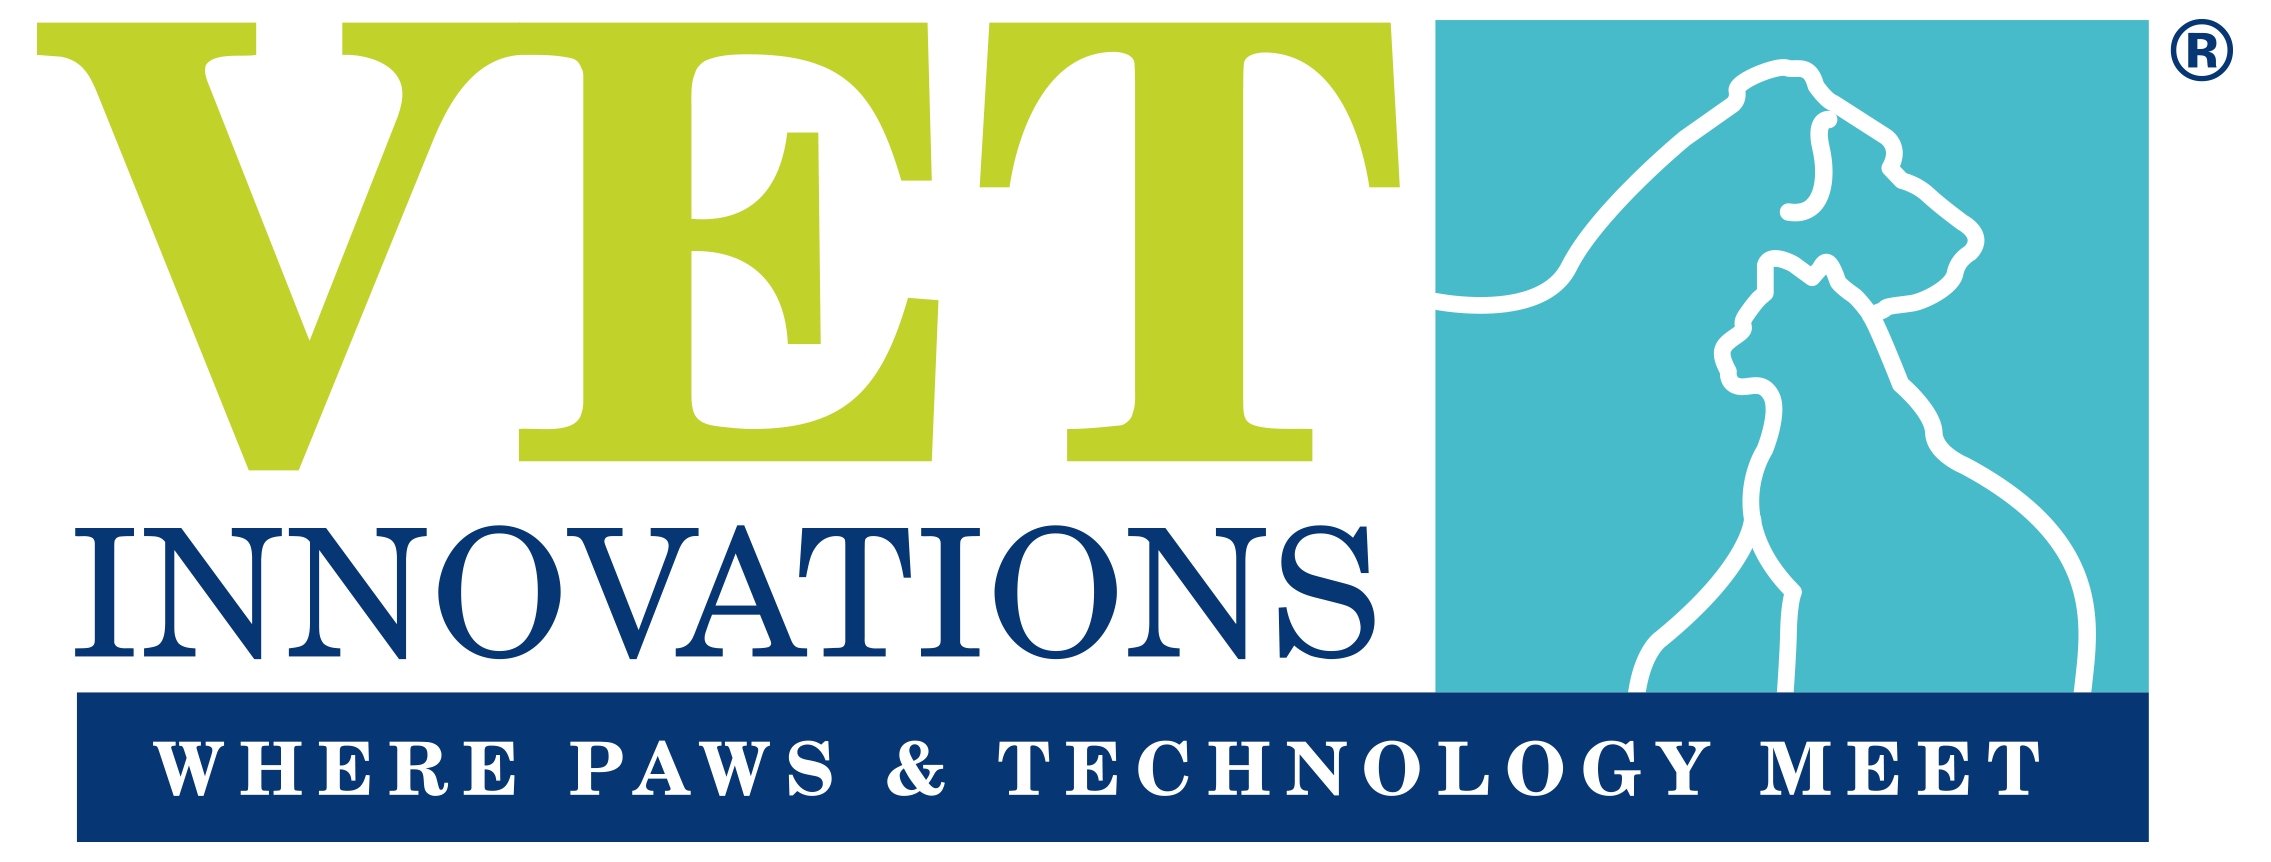 vet innovations logo